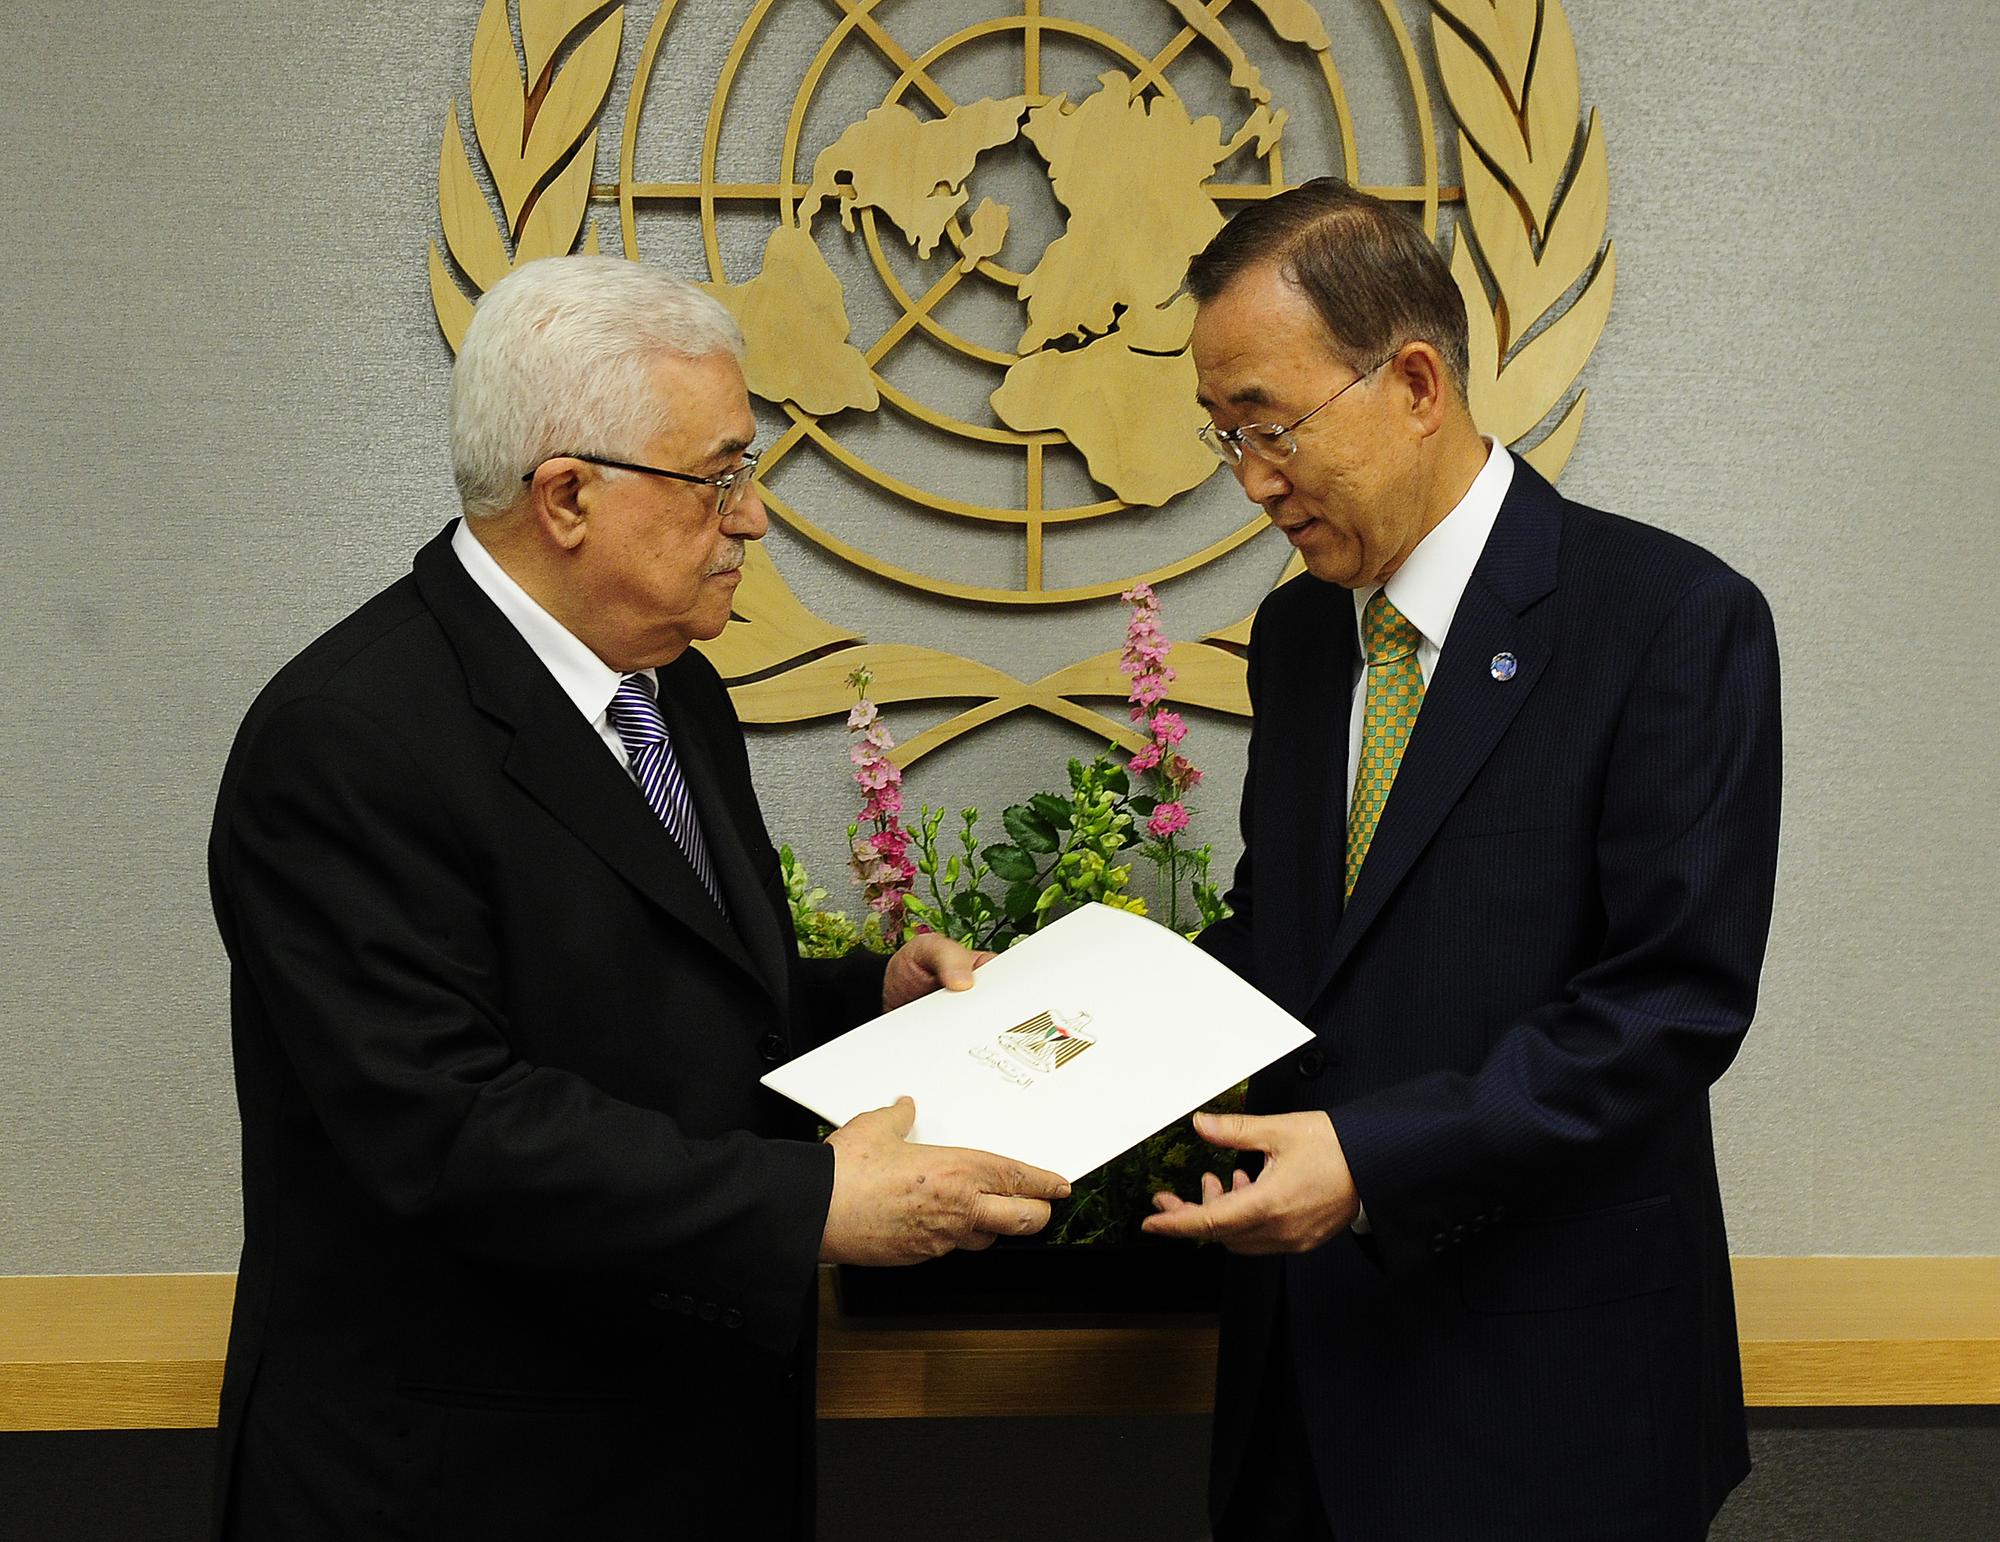 Mahmoud Abbas a présenté sa requête à Ban Ki-moon dans une enveloppe portant l'emblème palestinien. [EMMANUEL DUNAND]